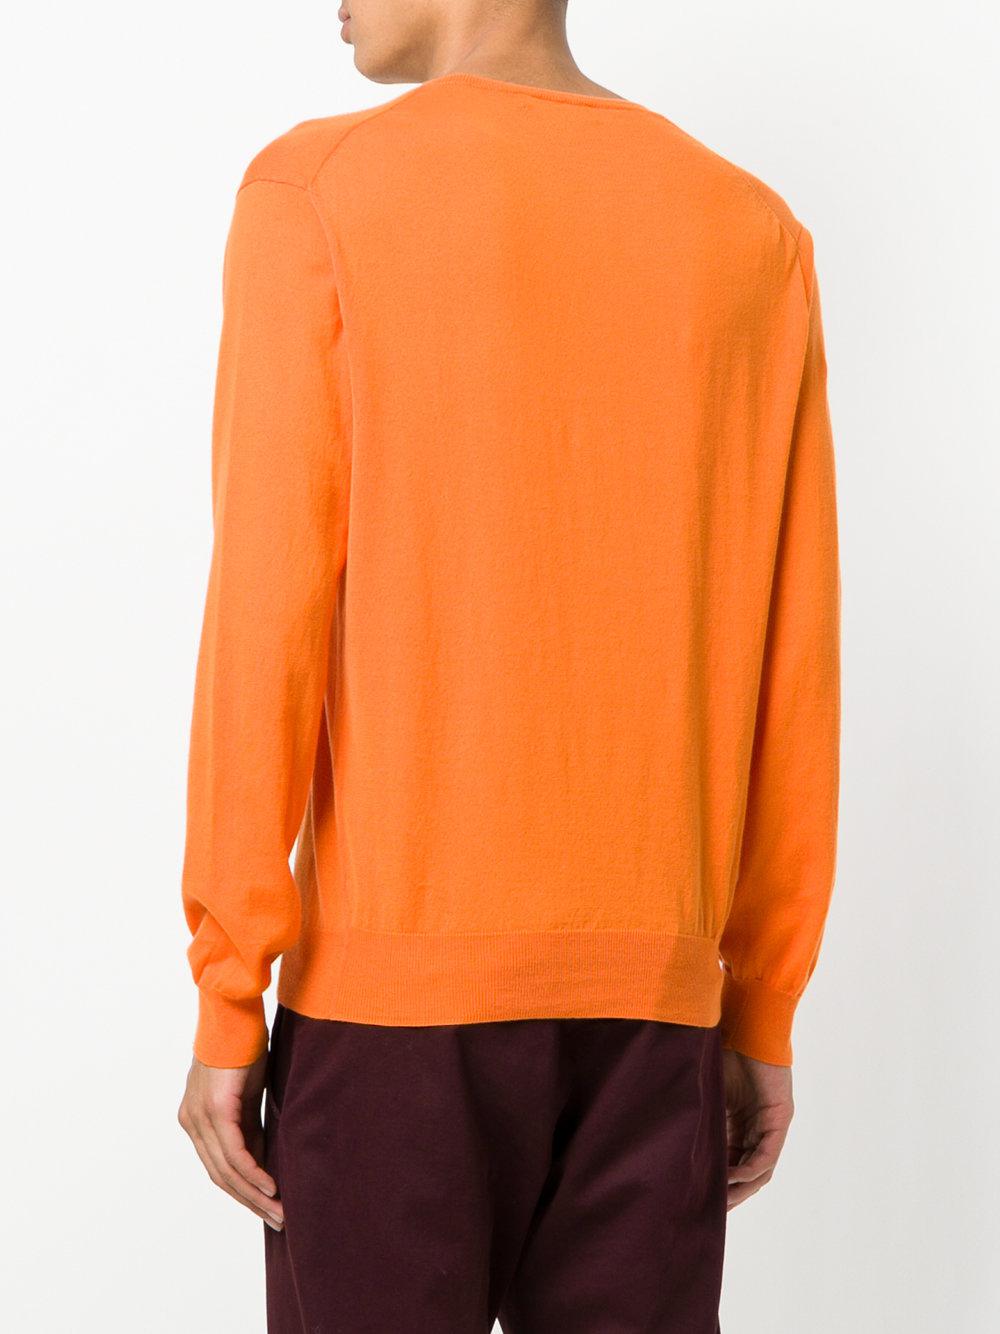 Lyst - Polo Ralph Lauren V-neck Sweater in Orange for Men